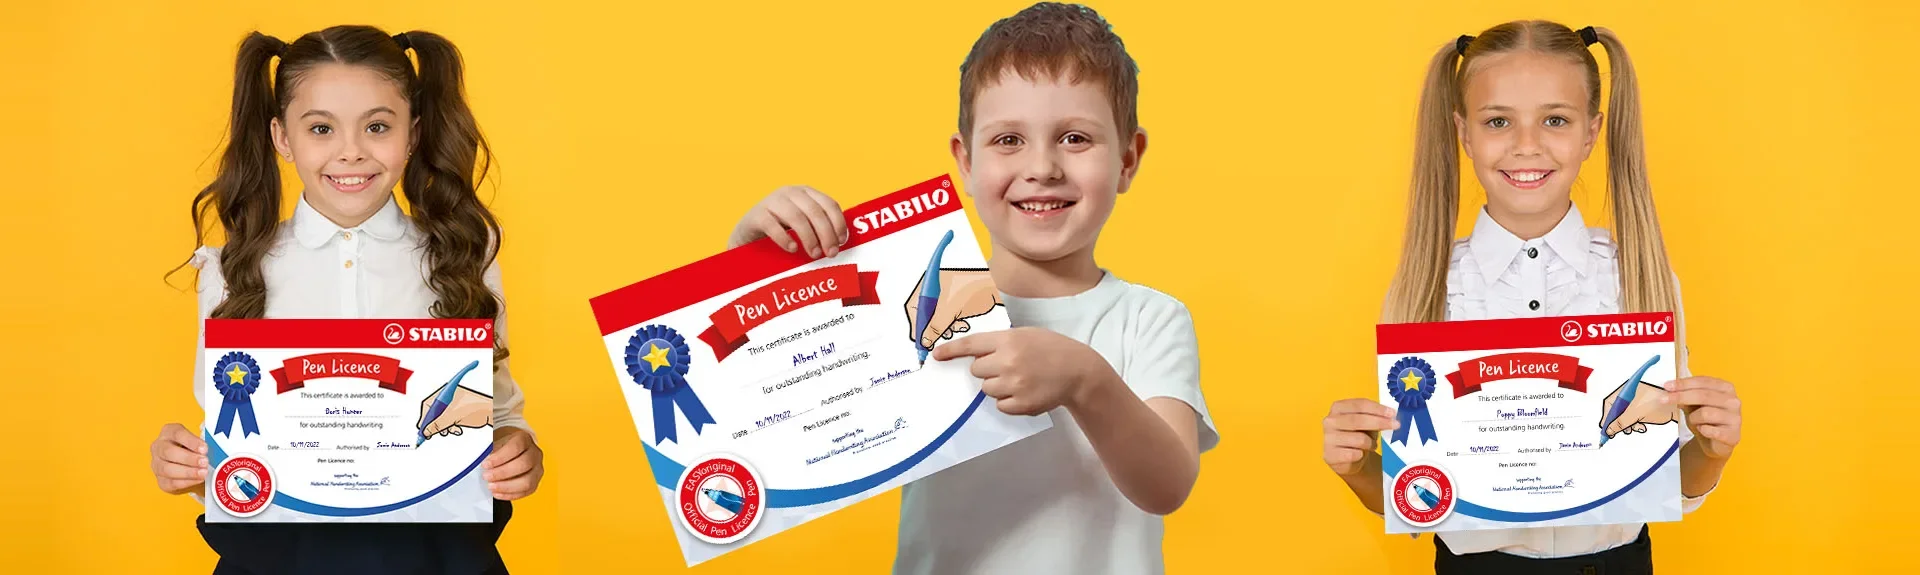 STABILO Pen Licence